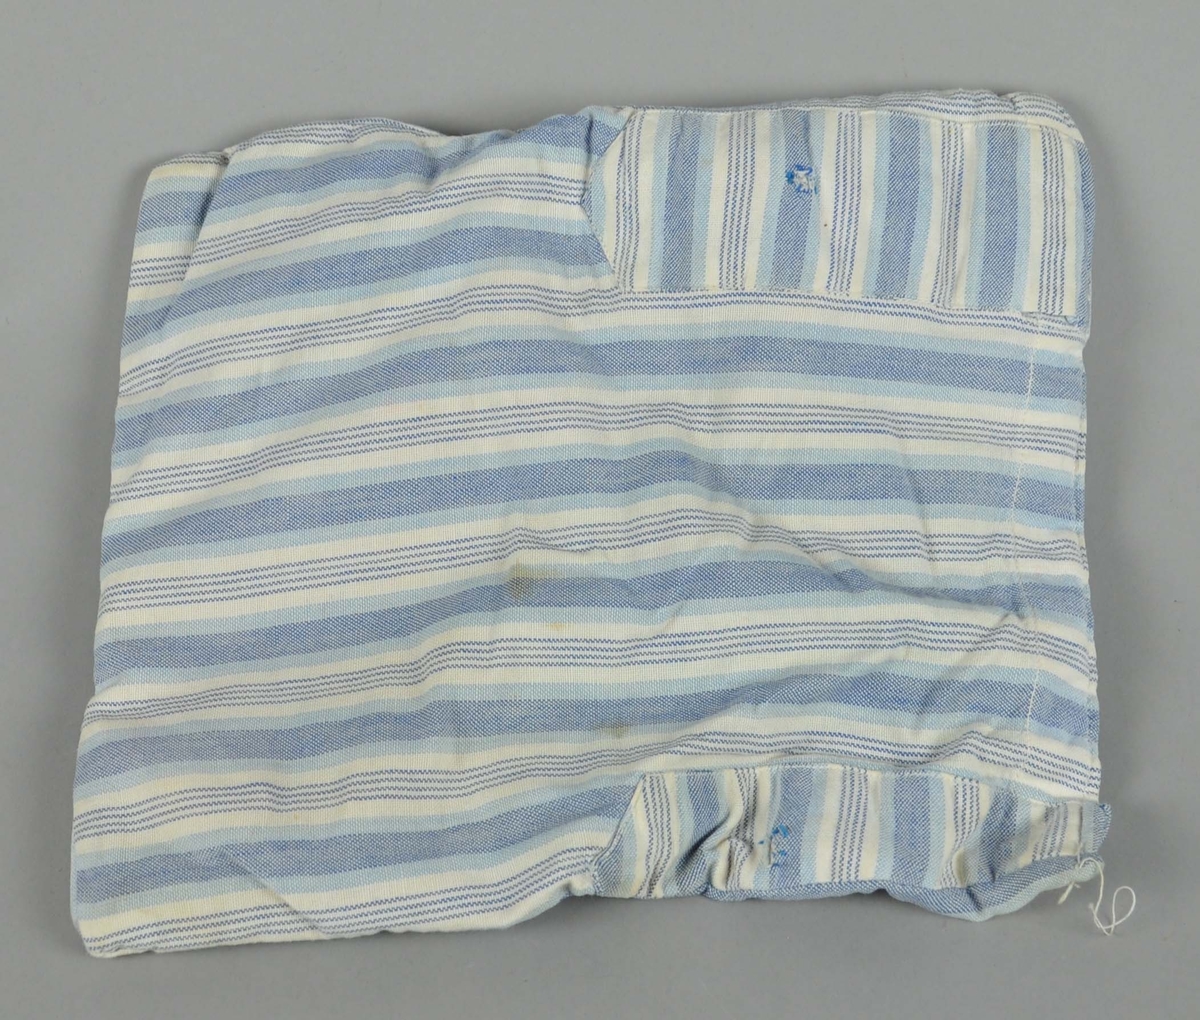 Madrass til dukkevogn av tekstil i hvitt og blått, med stripemønstre. Tekstilen er noe flekkete.